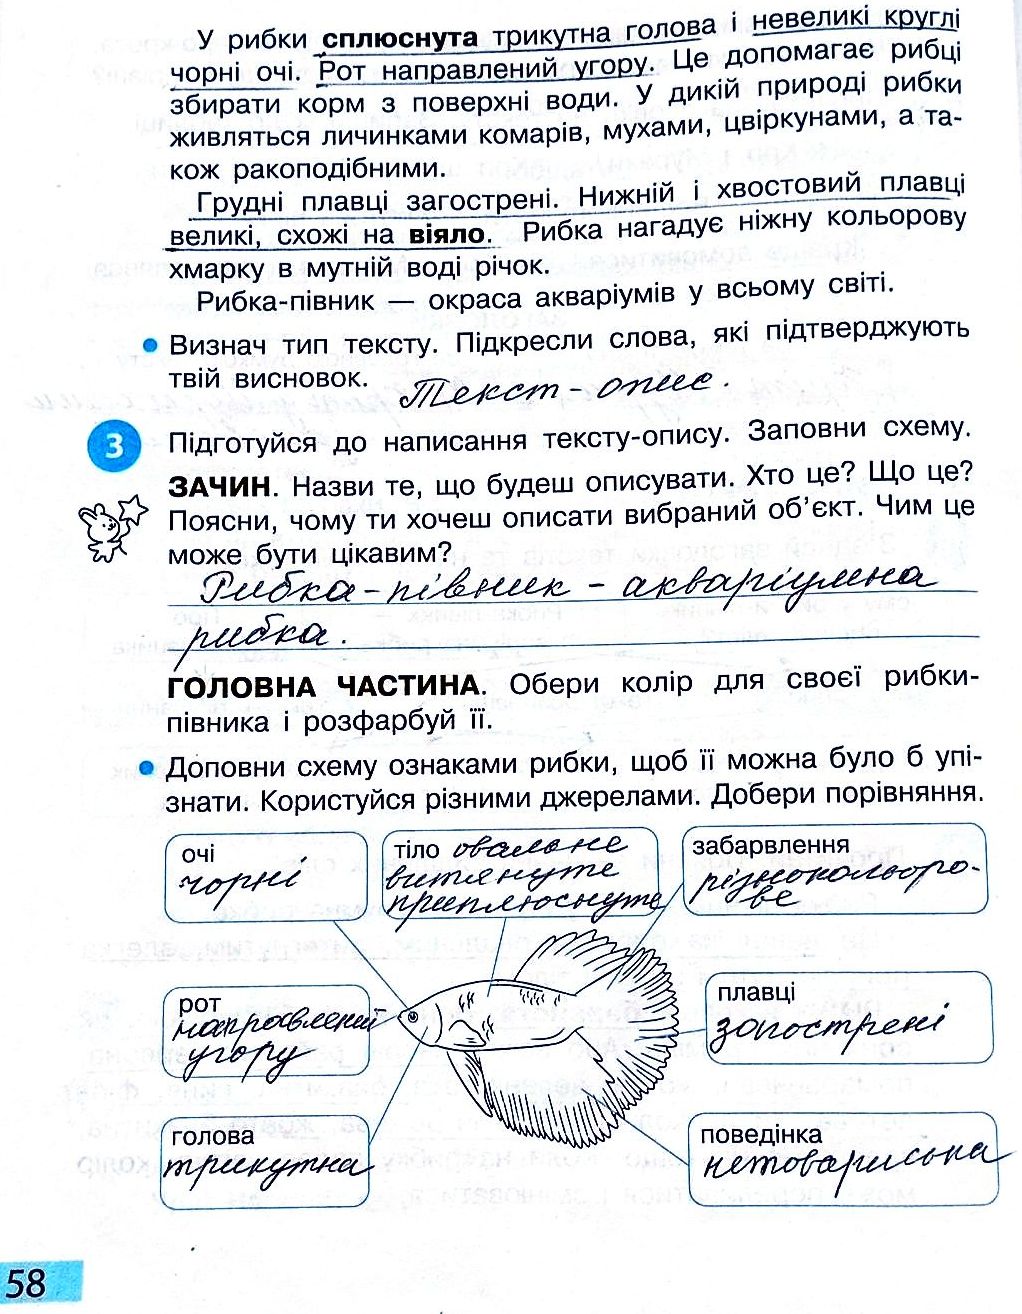 Сторінка 58 частина 2 гдз 3 клас робочий зошит українська мова Большакова